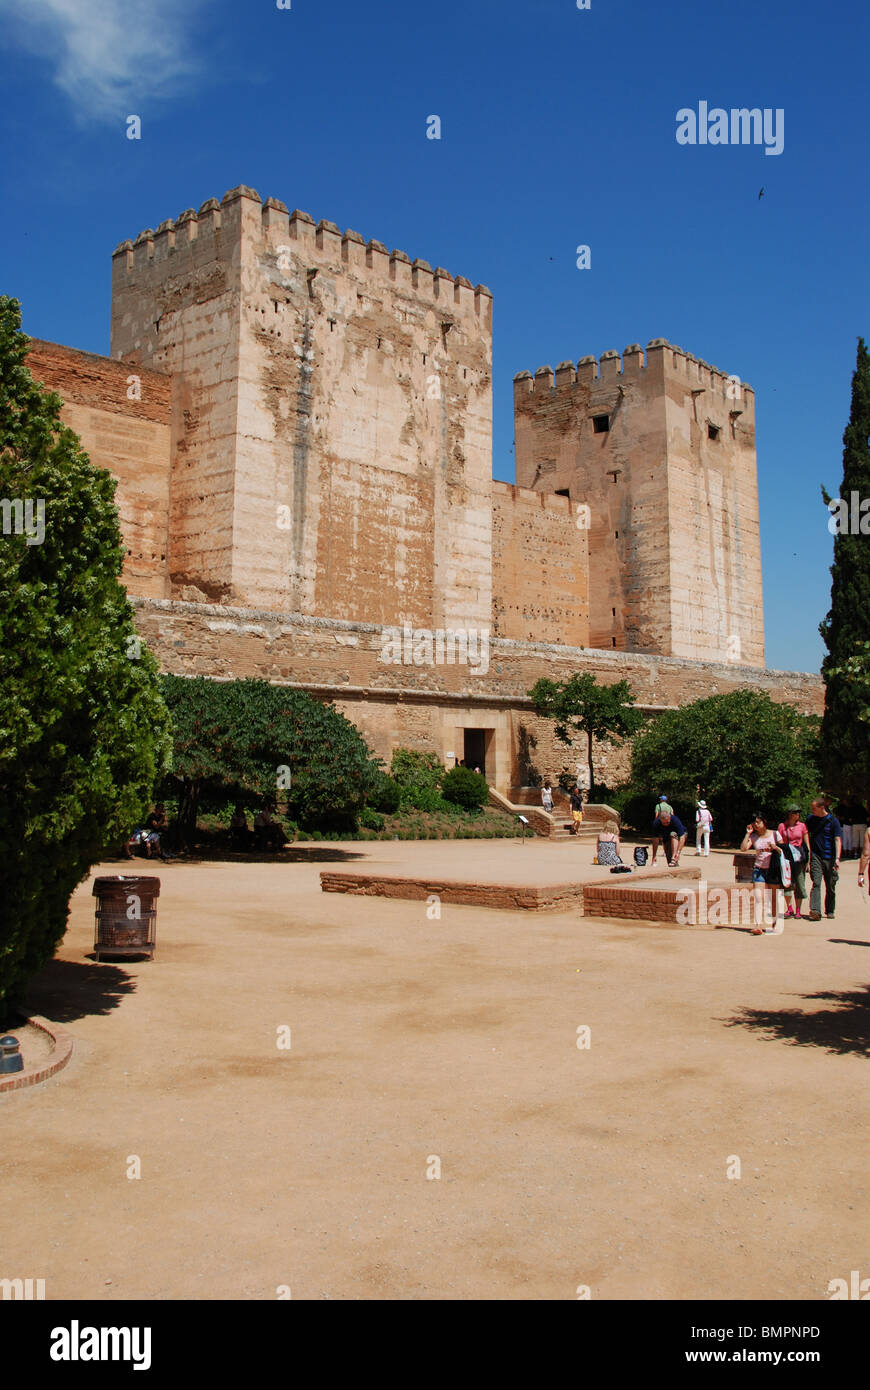 Rotto la torre e la Torre dell'Omaggio, Castello, palazzo della Alhambra di Granada, provincia di Granada, Andalusia, Spagna, Europa occidentale. Foto Stock